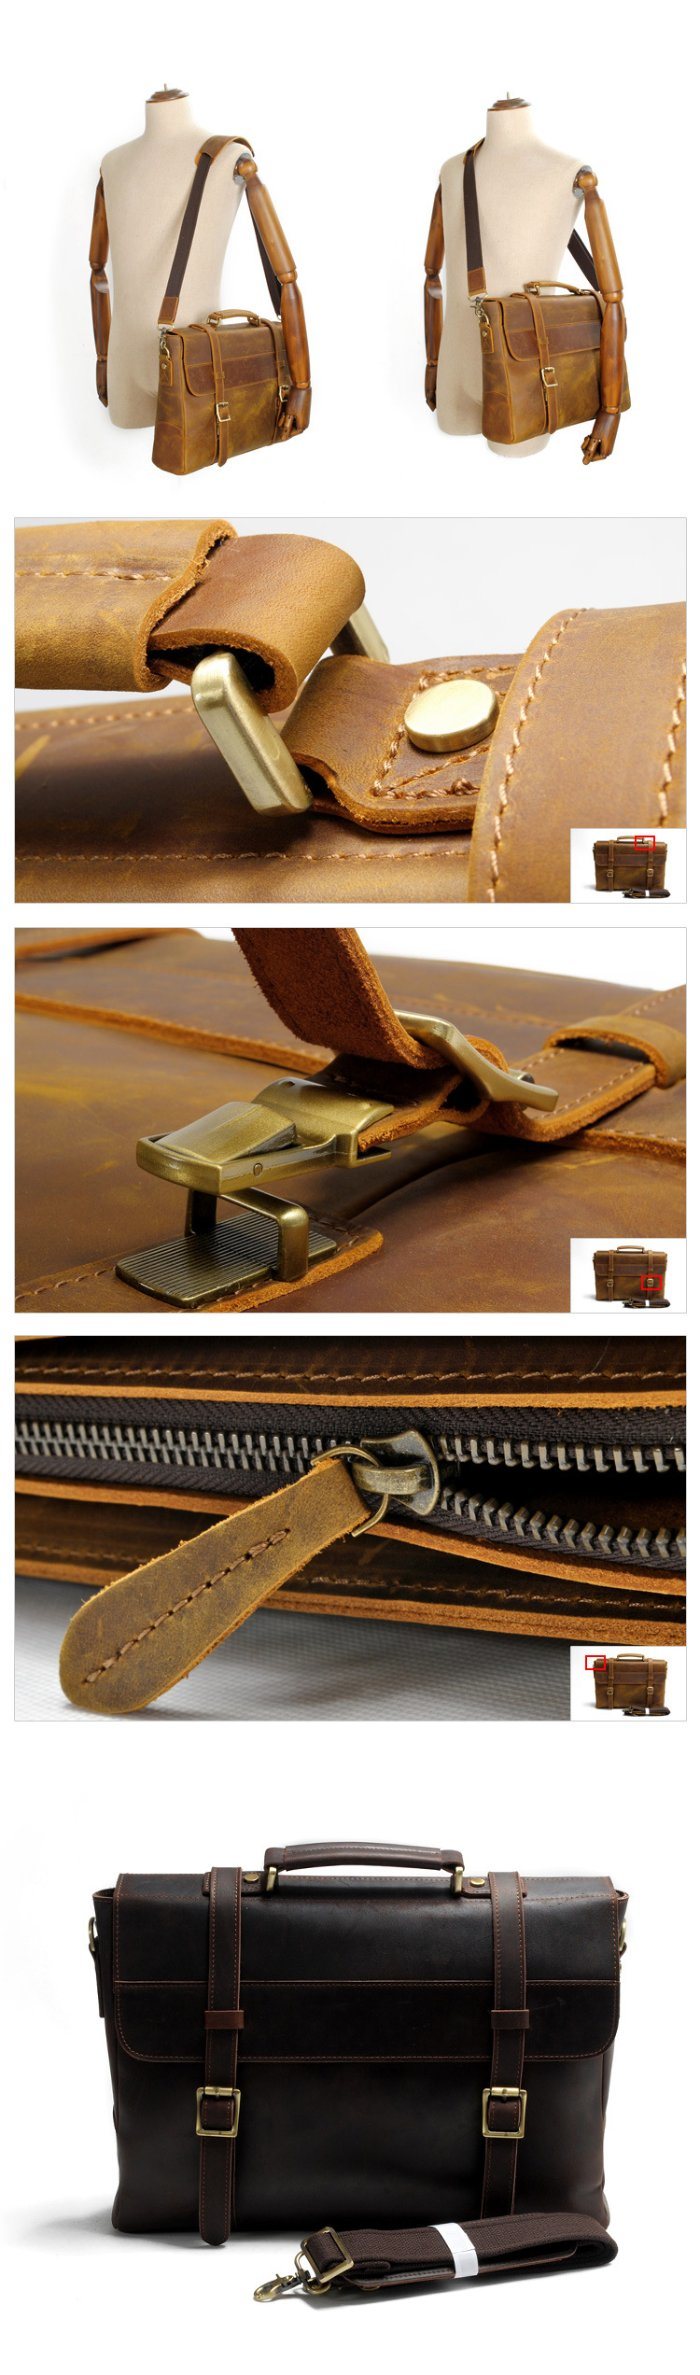 Vintage Brown Men Leather Messenger Laptop Bag Leather Briefcase